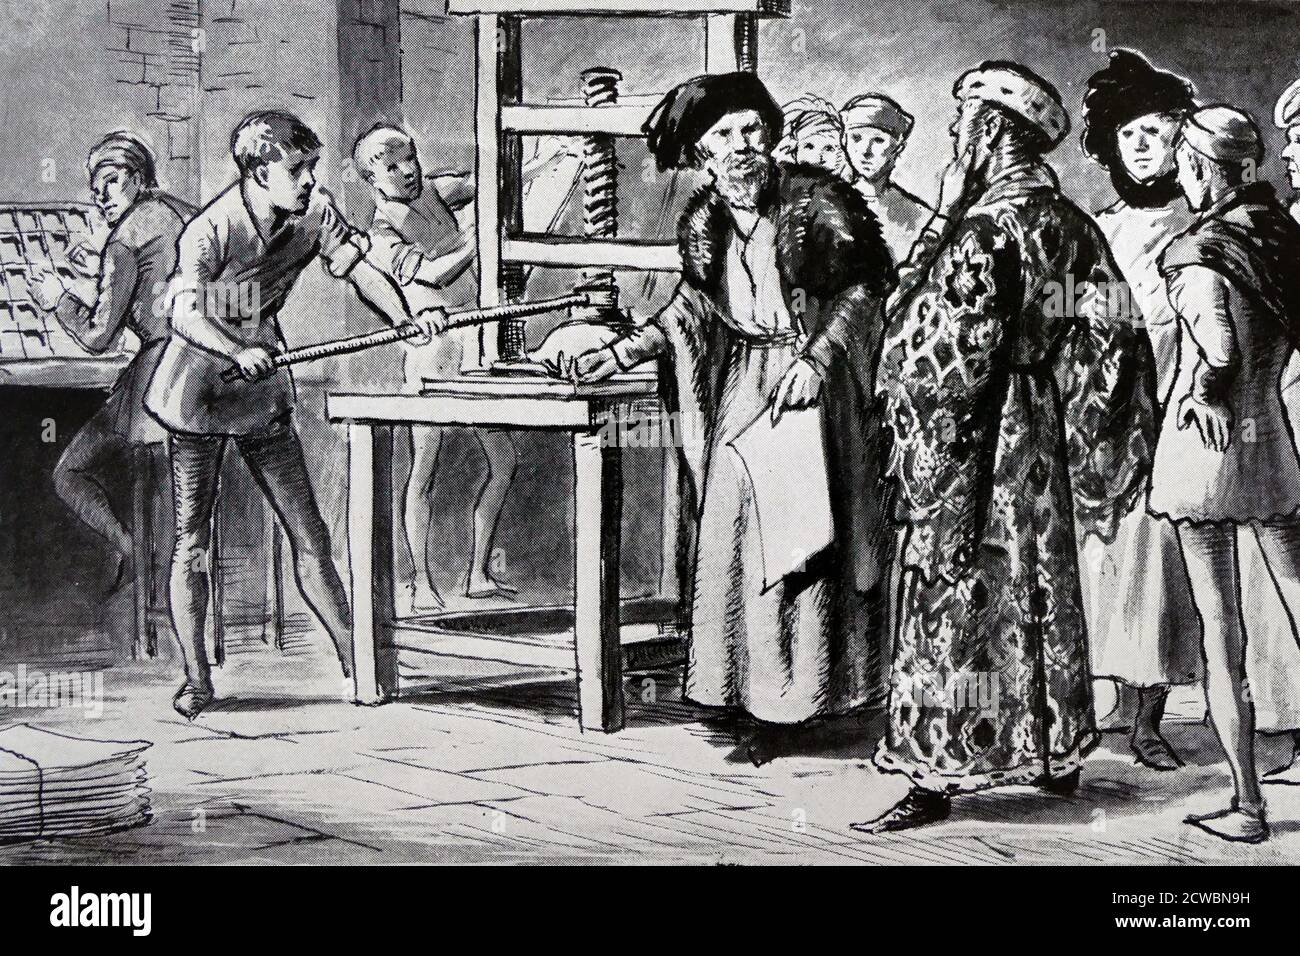 Illustration aus einem Kinderbuch, das Besucher von William Caxtons Druckmaschine darstellt. William Caxton (c. 1422 - c. 1491) war ein englischer Kaufmann, Diplomat und Schriftsteller. Er gilt als der erste, der 1476 eine Druckmaschine in England eingeführt hat, und war als Drucker der erste englische Einzelhändler für gedruckte Bücher. Stockfoto